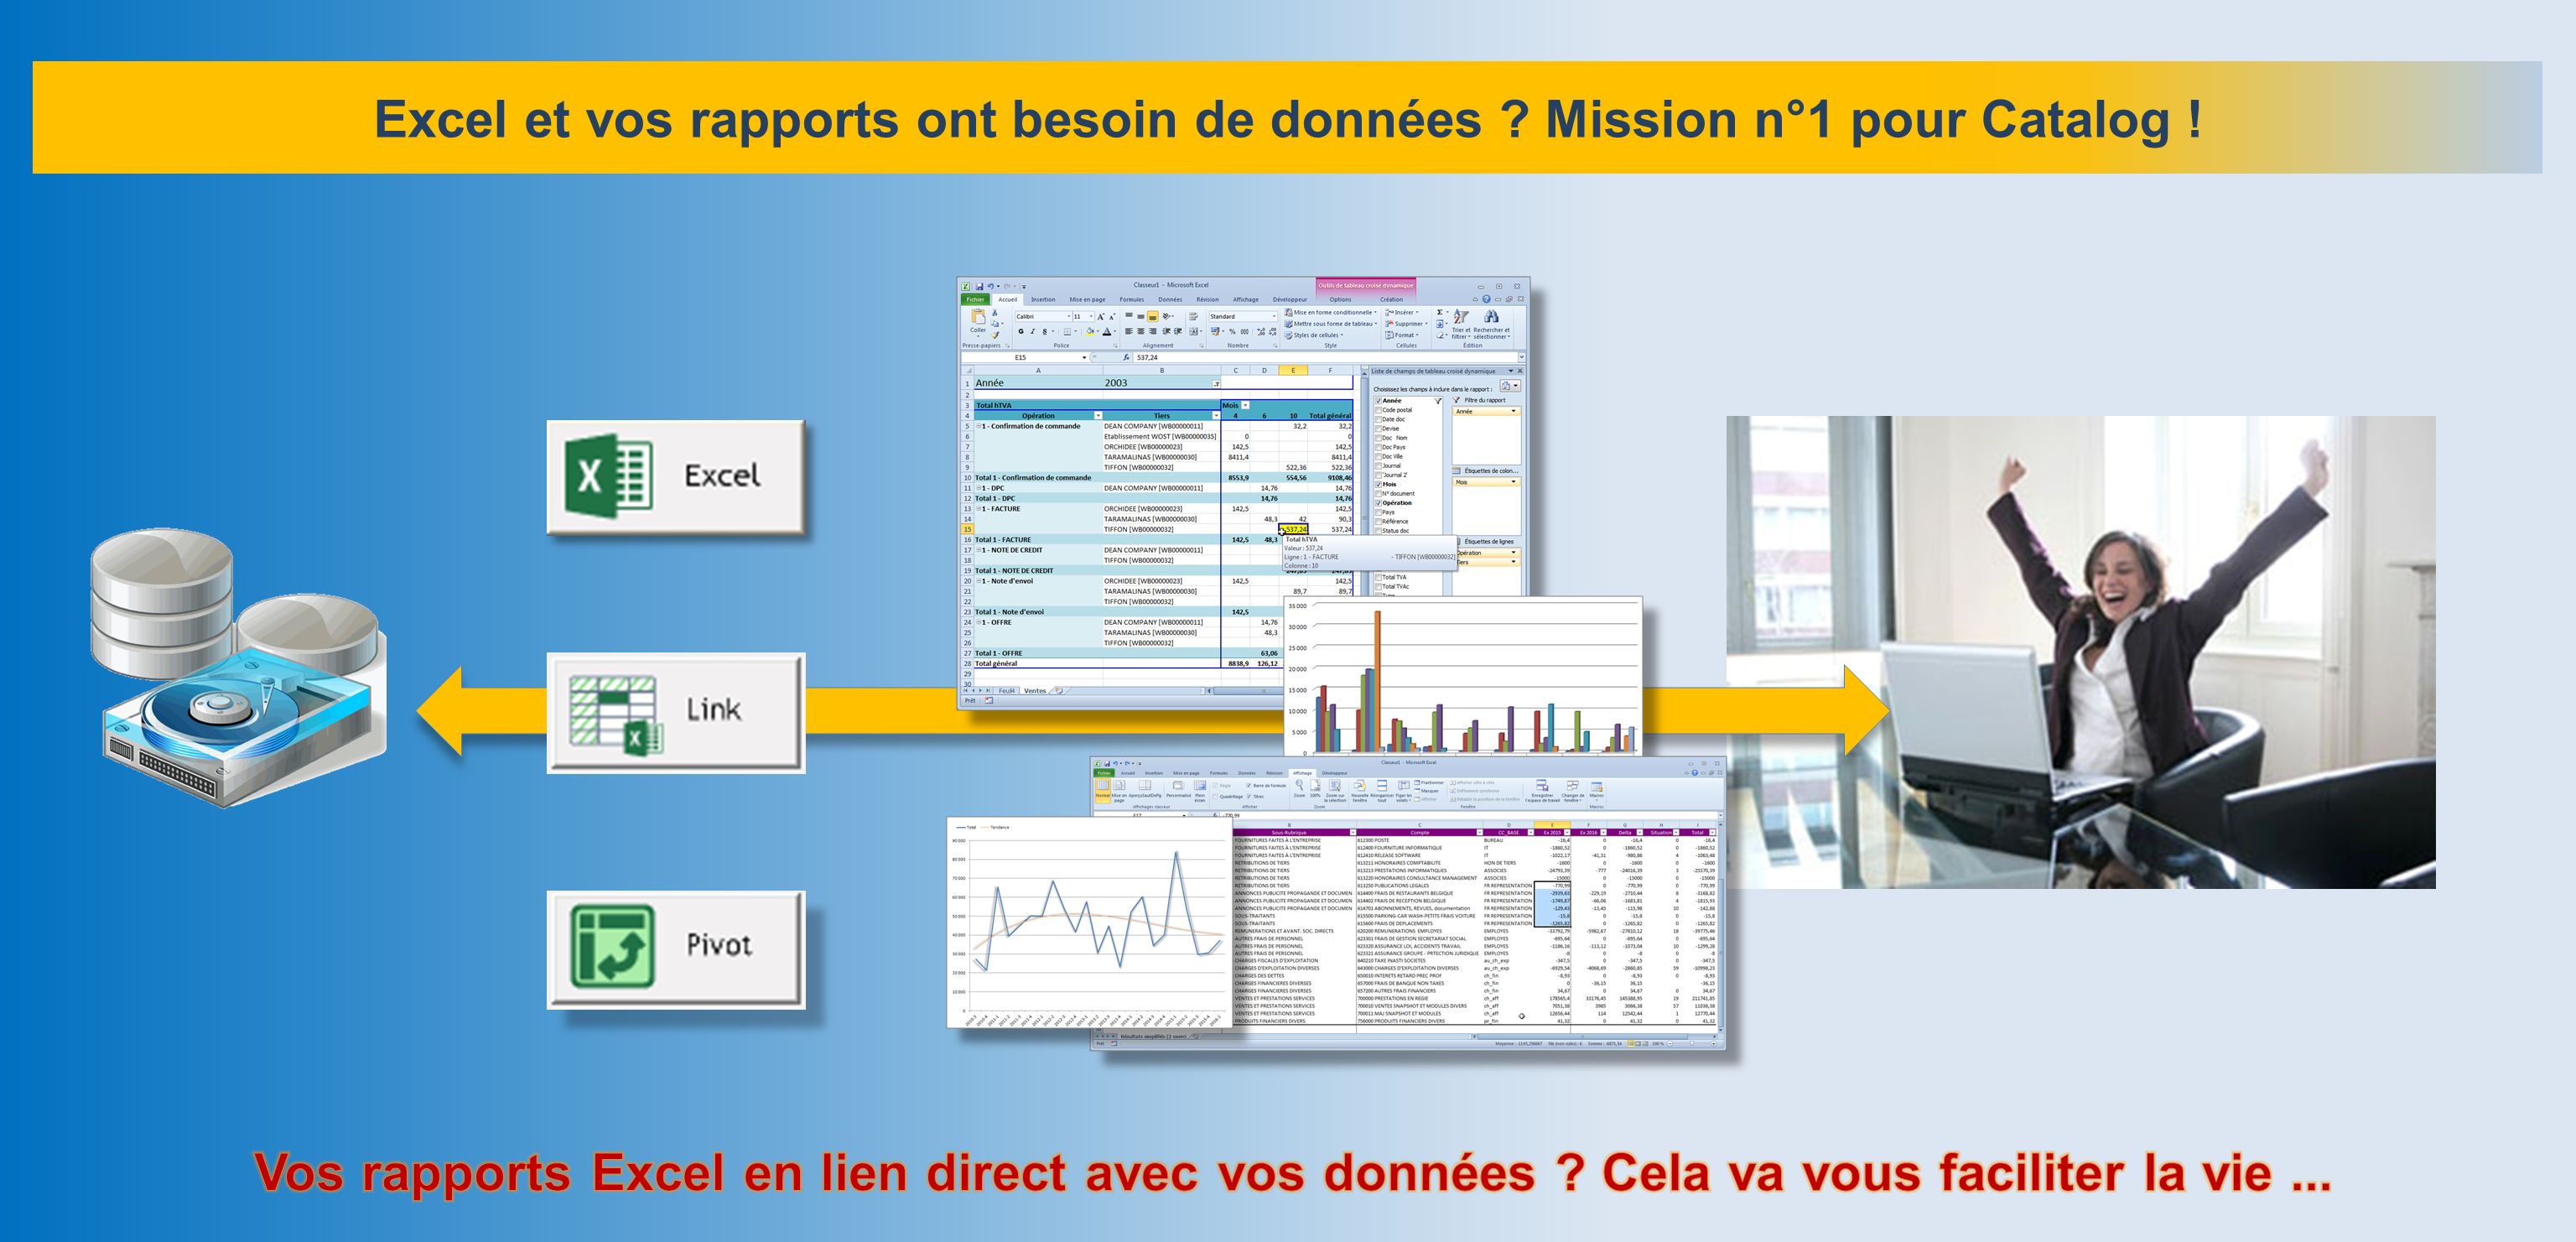 Excel et vos rapports ont besoin de données Mission n°1 pour Catalog !